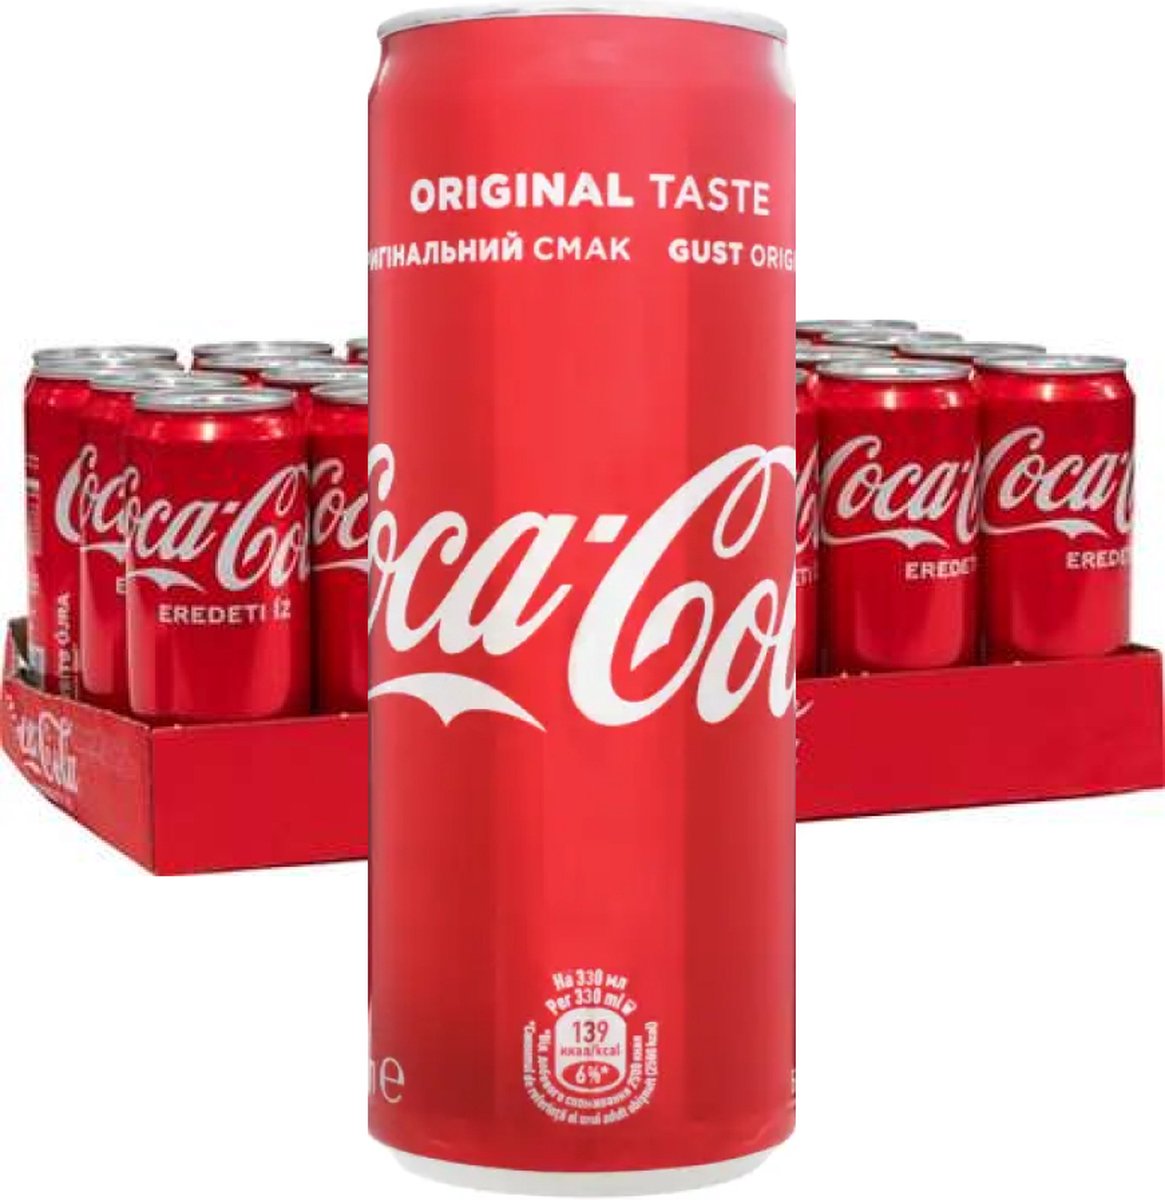 Canettes de Coca Cola 33cl x 12 pack | bol.com